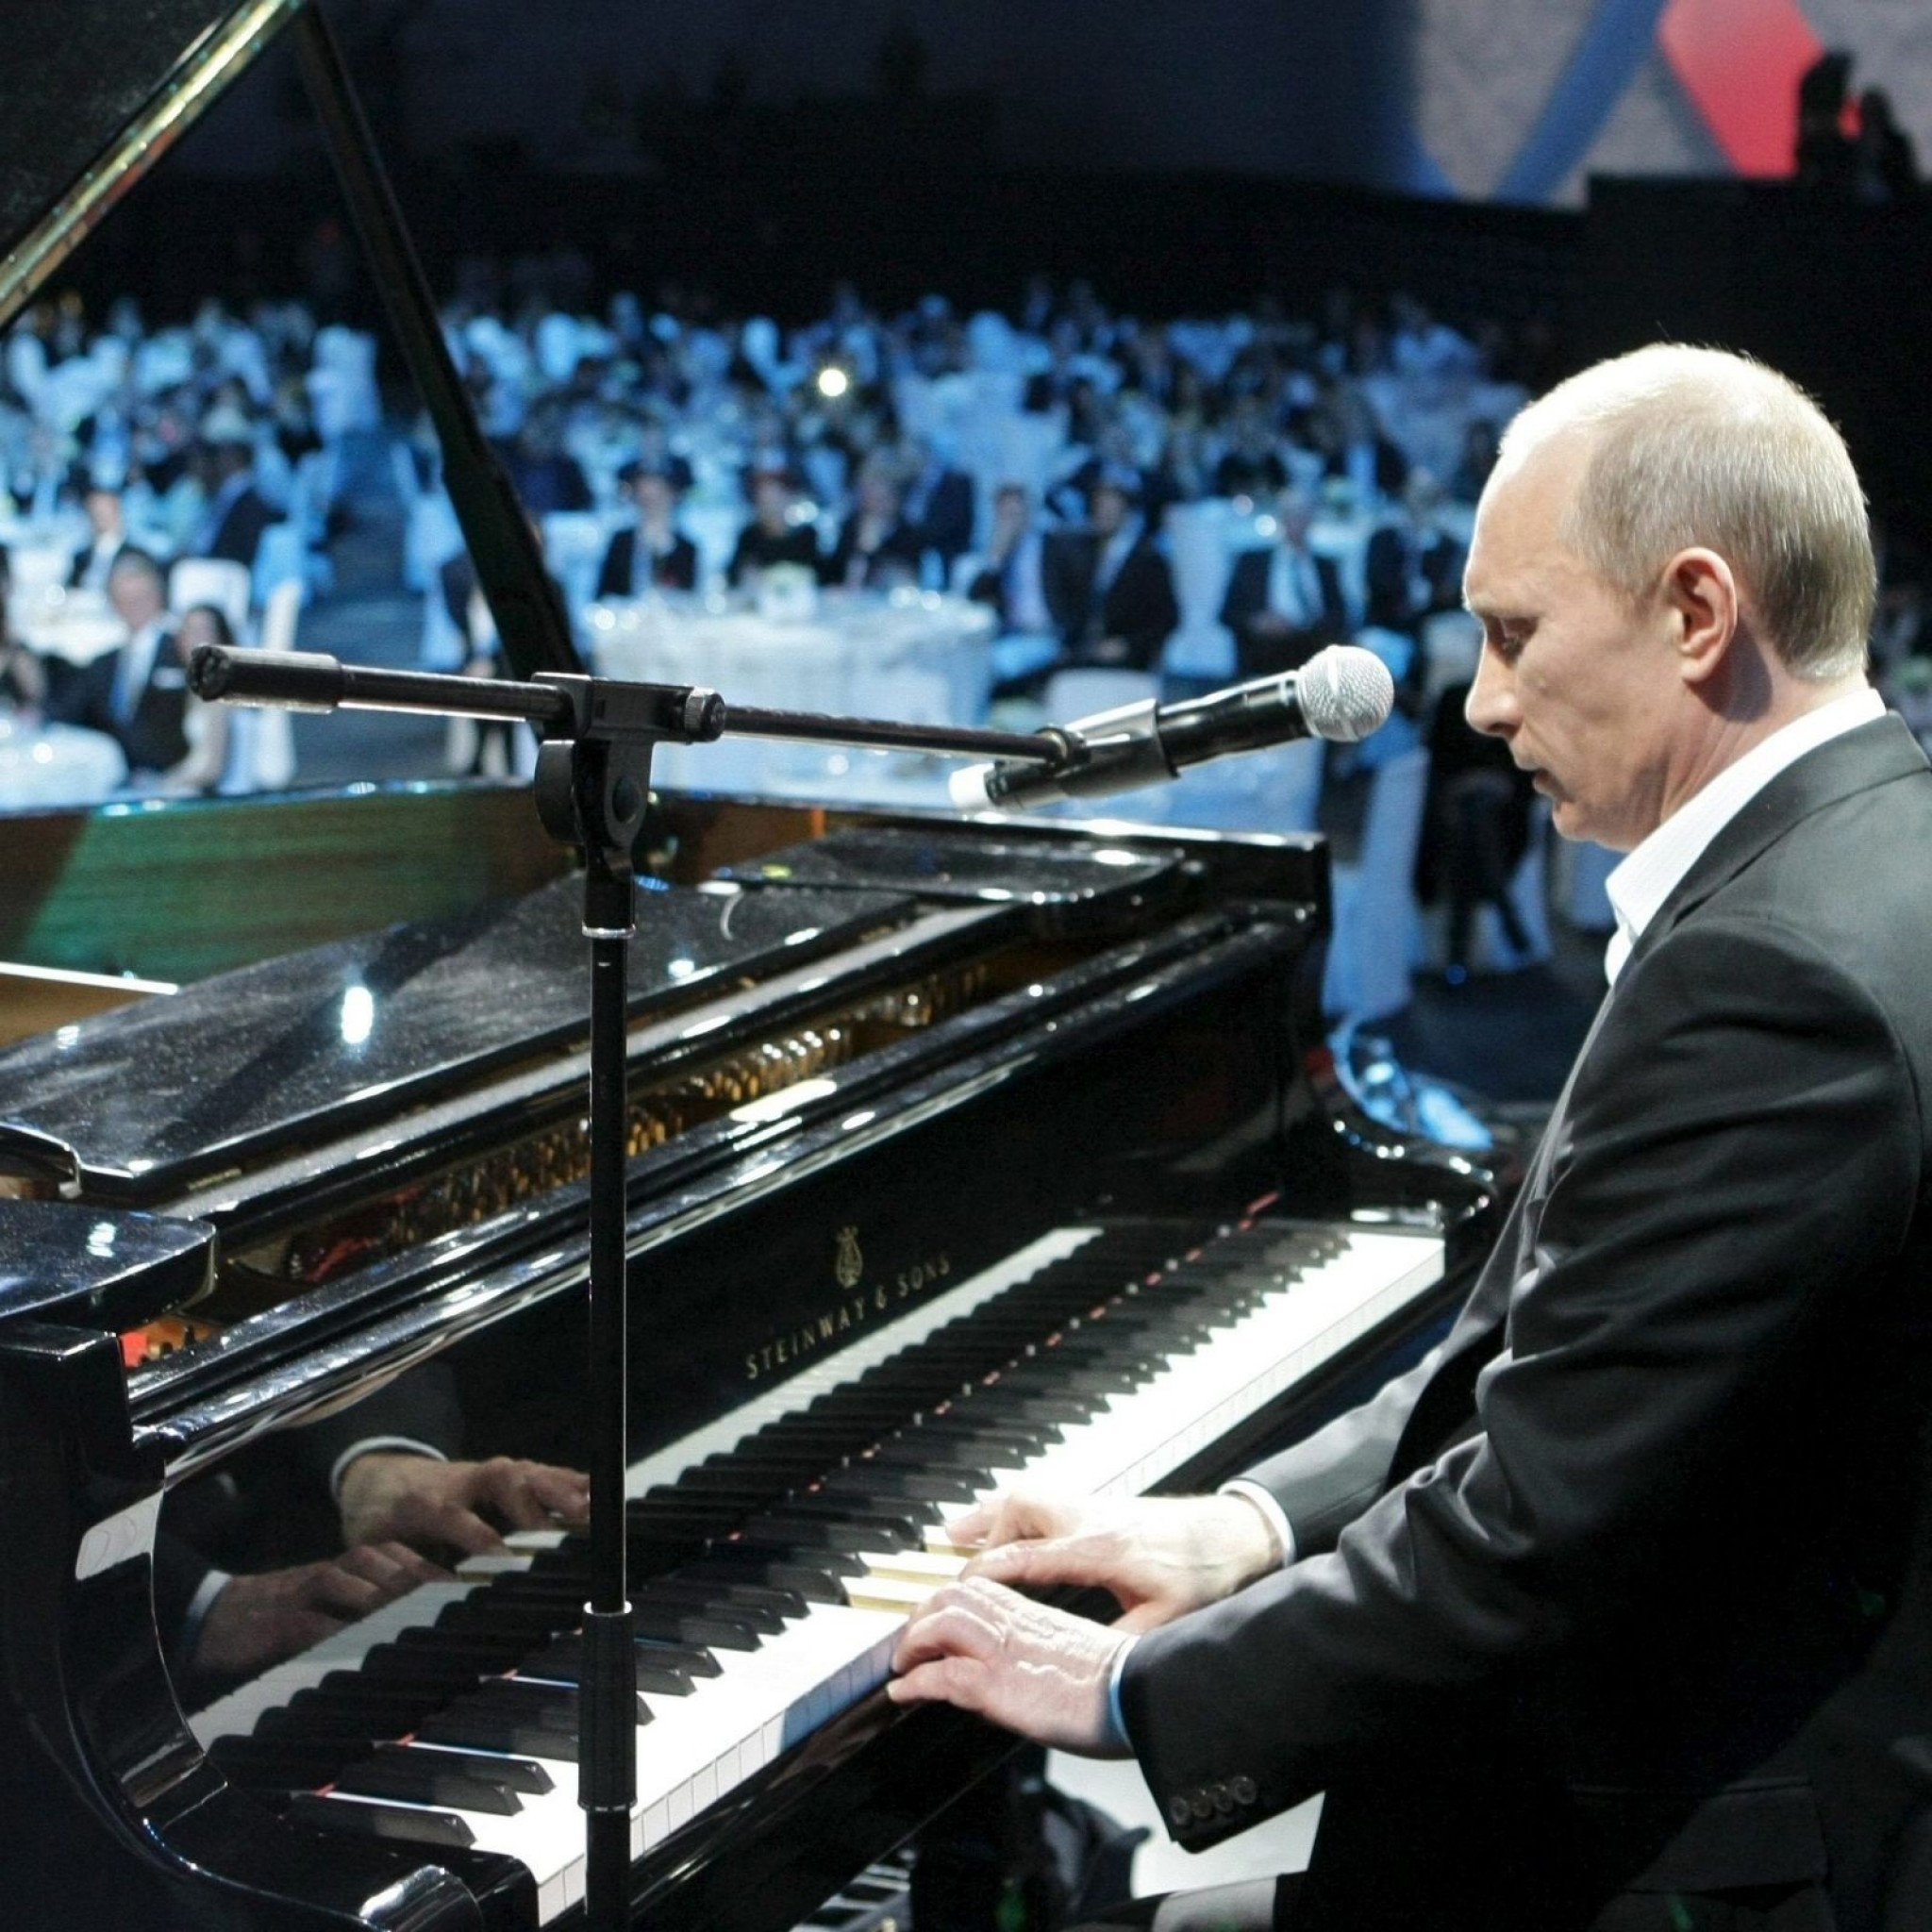 Raquo プーチンロシア大統領ピアノを弾く Hdの壁紙 Ipad タブレット壁紙ギャラリー